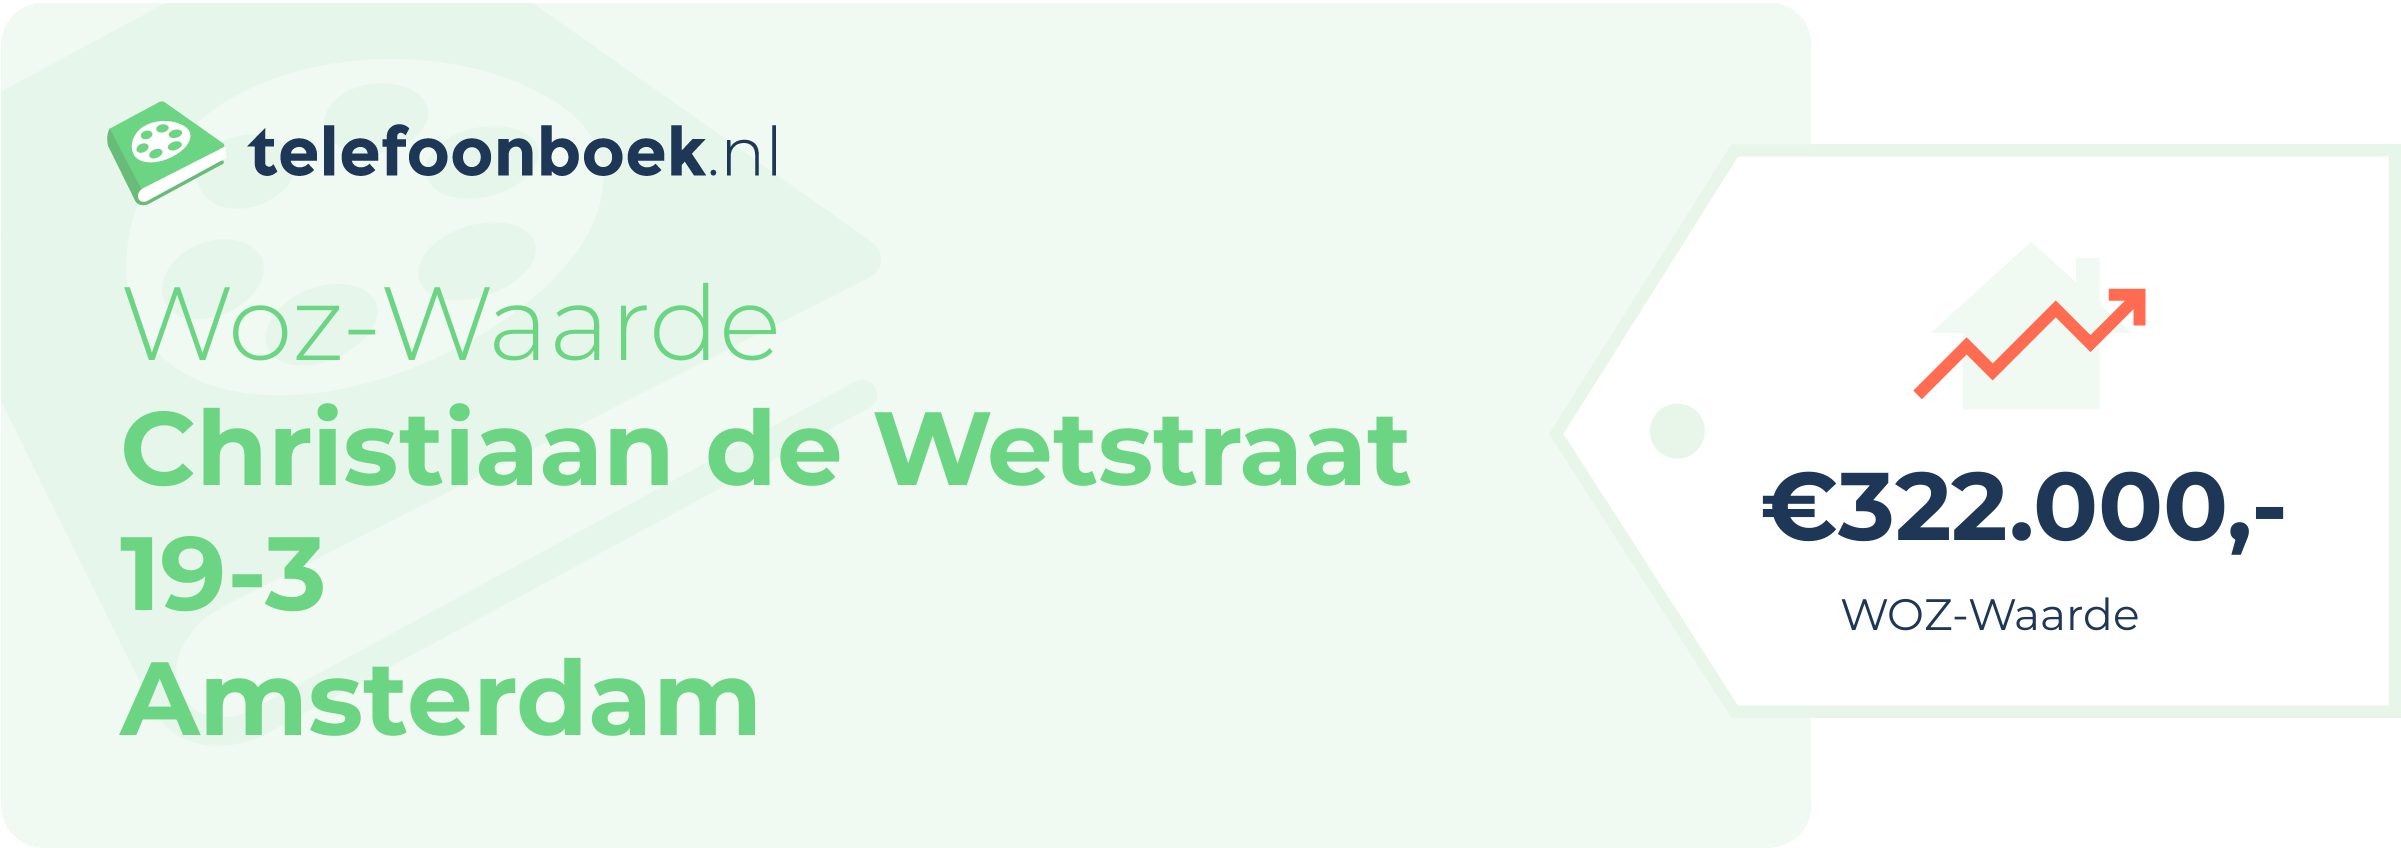 WOZ-waarde Christiaan De Wetstraat 19-3 Amsterdam